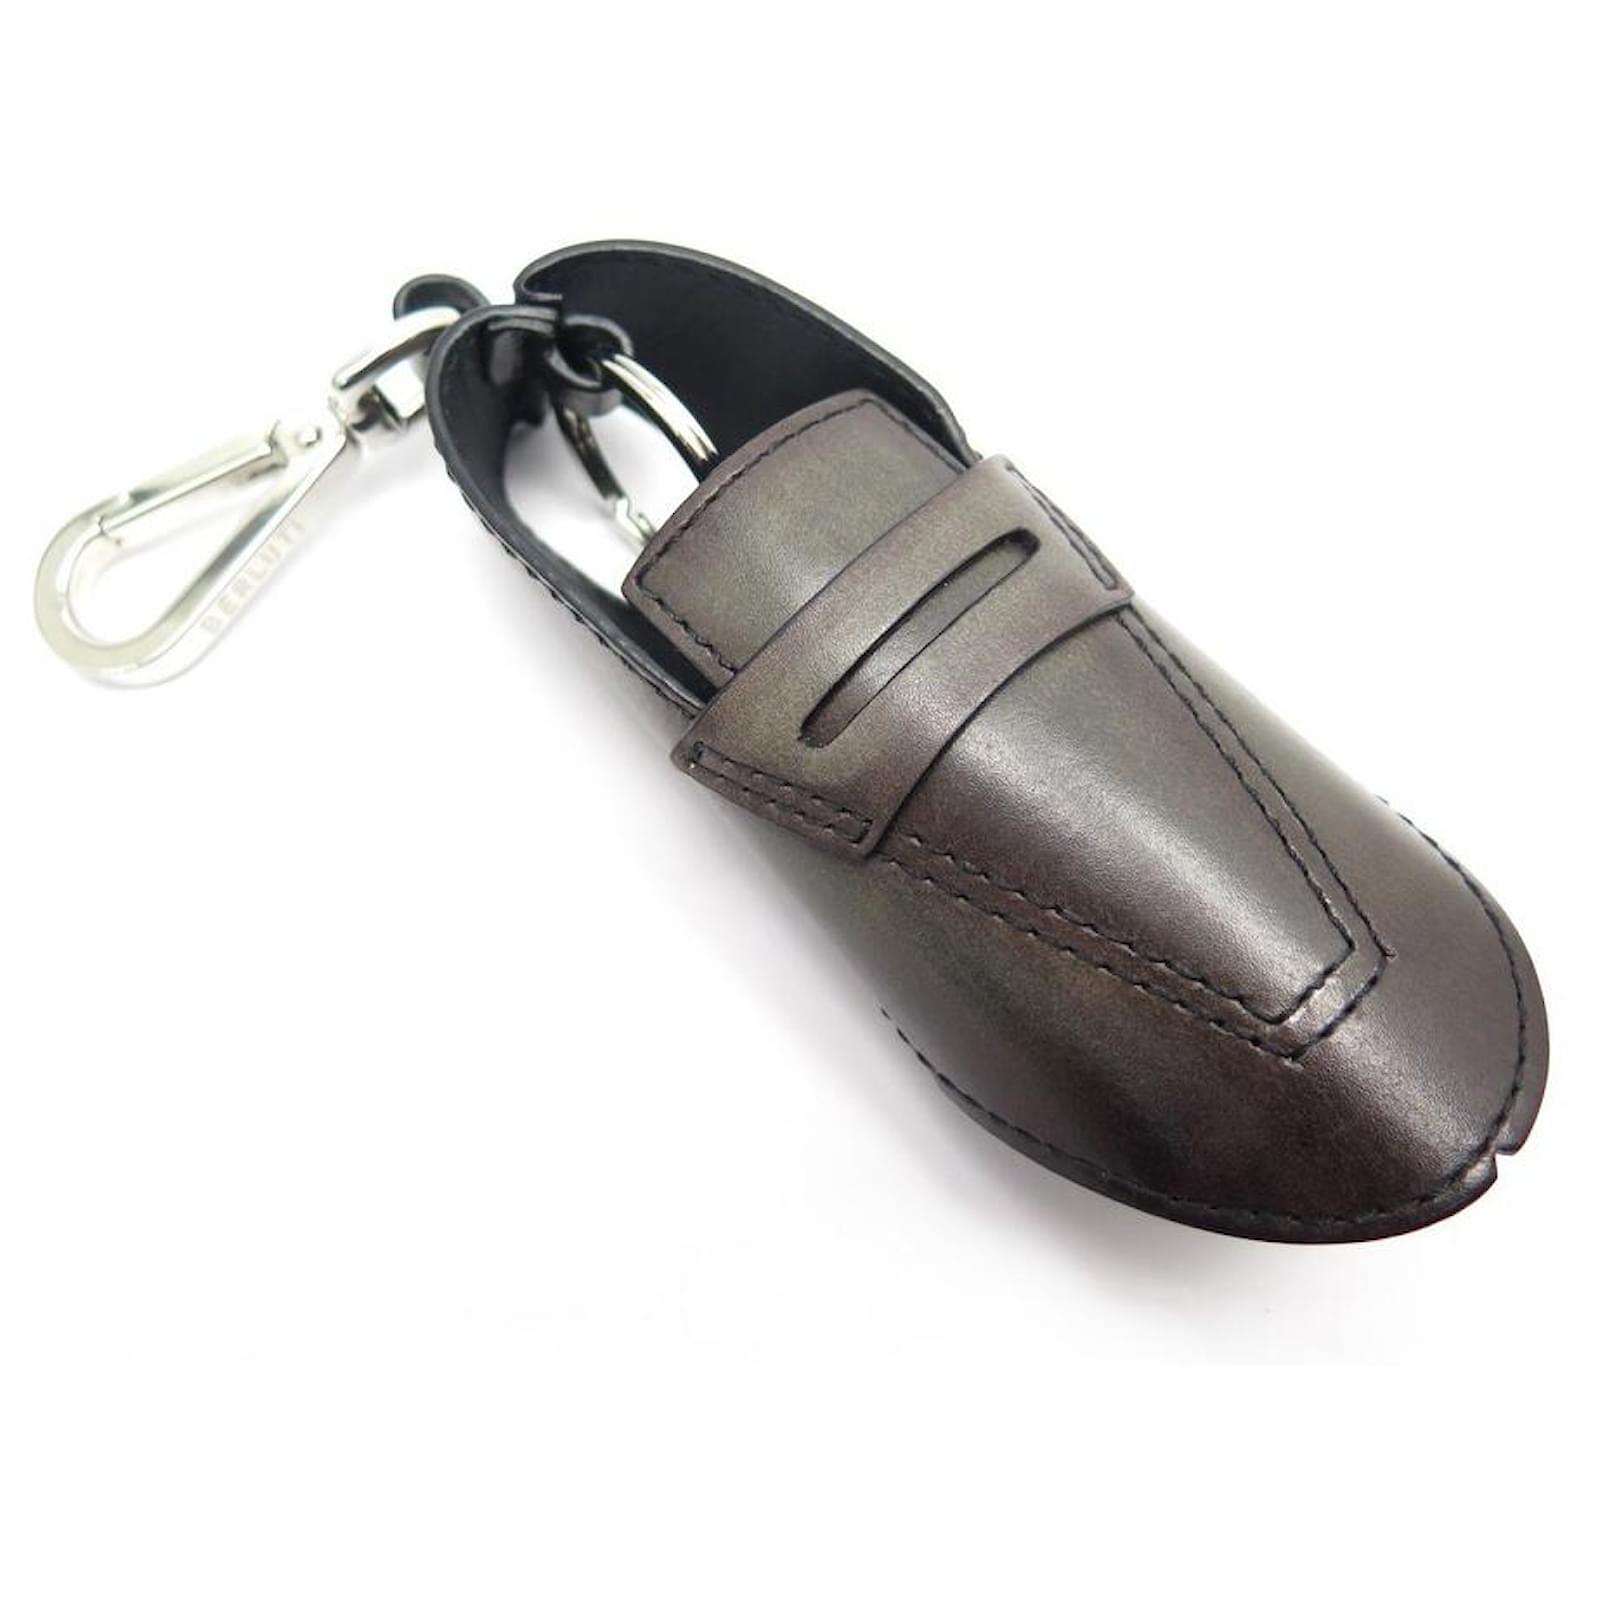 Porte-clés original chaussure de marche et gourdeTROIKA pour homme